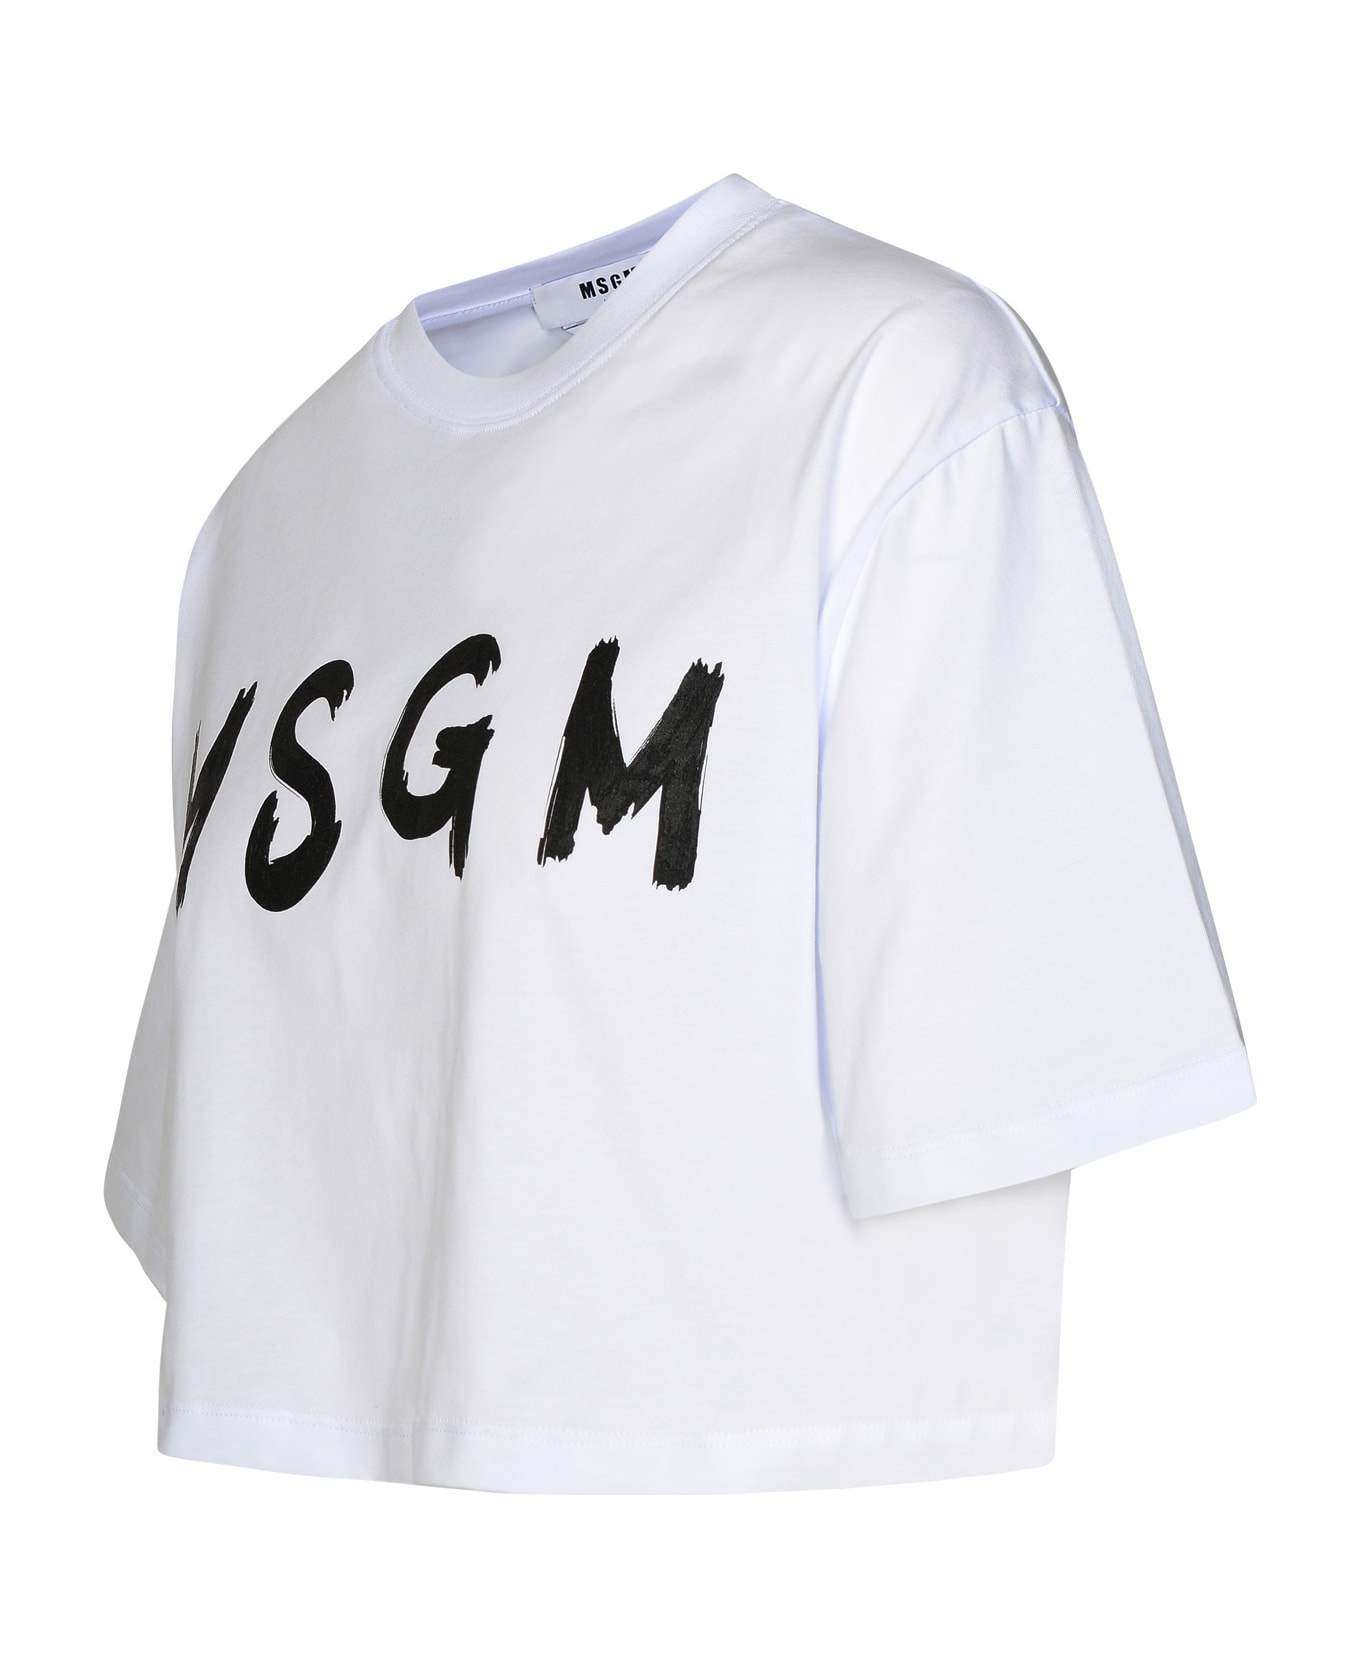 MSGM White Cotton T-shirt - Bianco Tシャツ